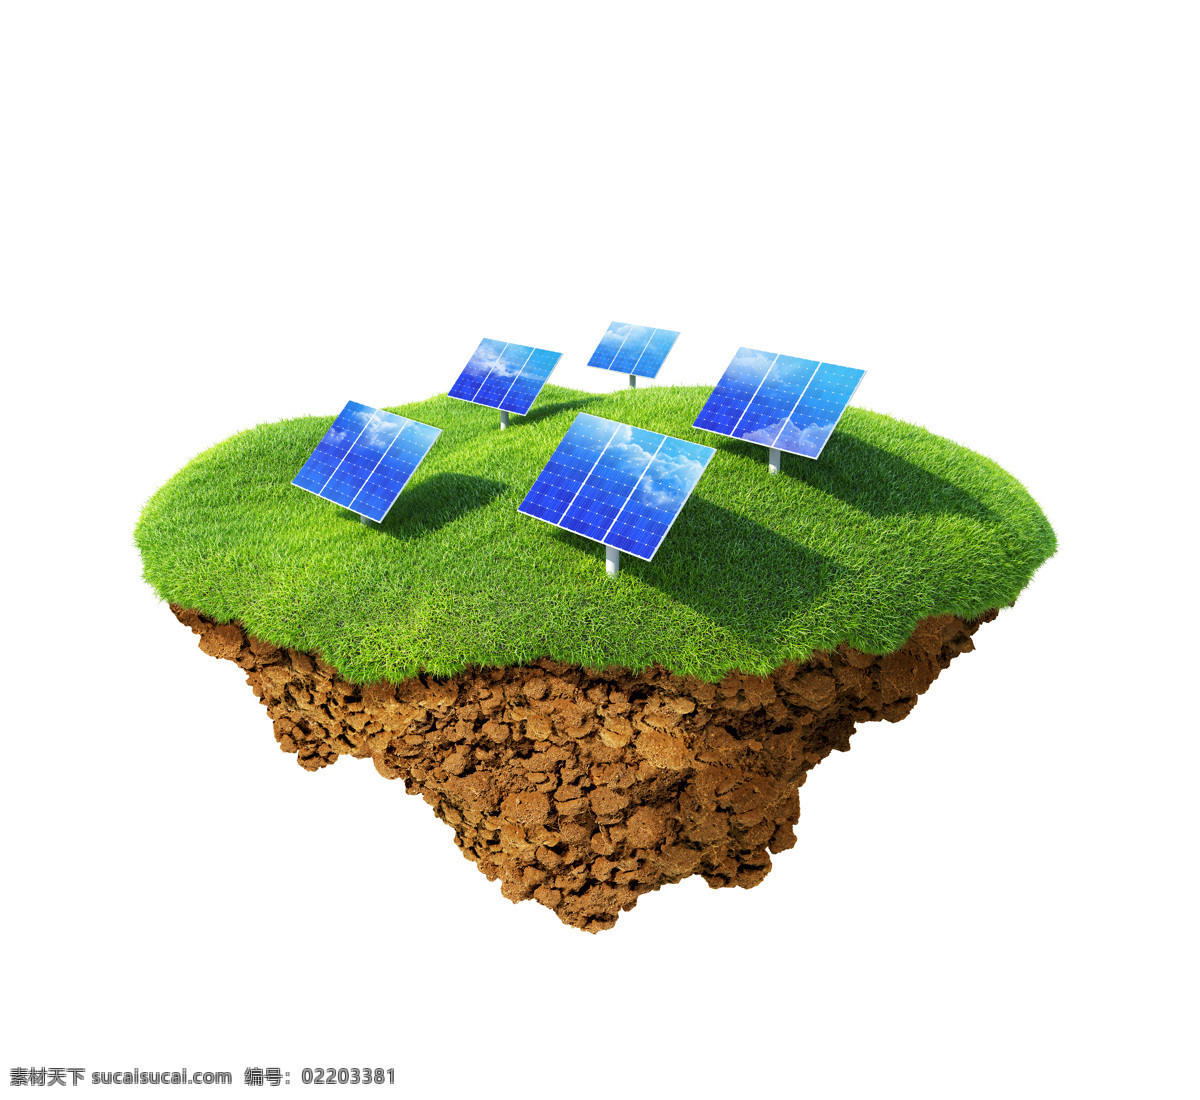 背景 草地 低碳 环保 环保素材 节能 绿草 太阳能 绿色环保 绿色 生态 土壤 地表 矢量图 日常生活